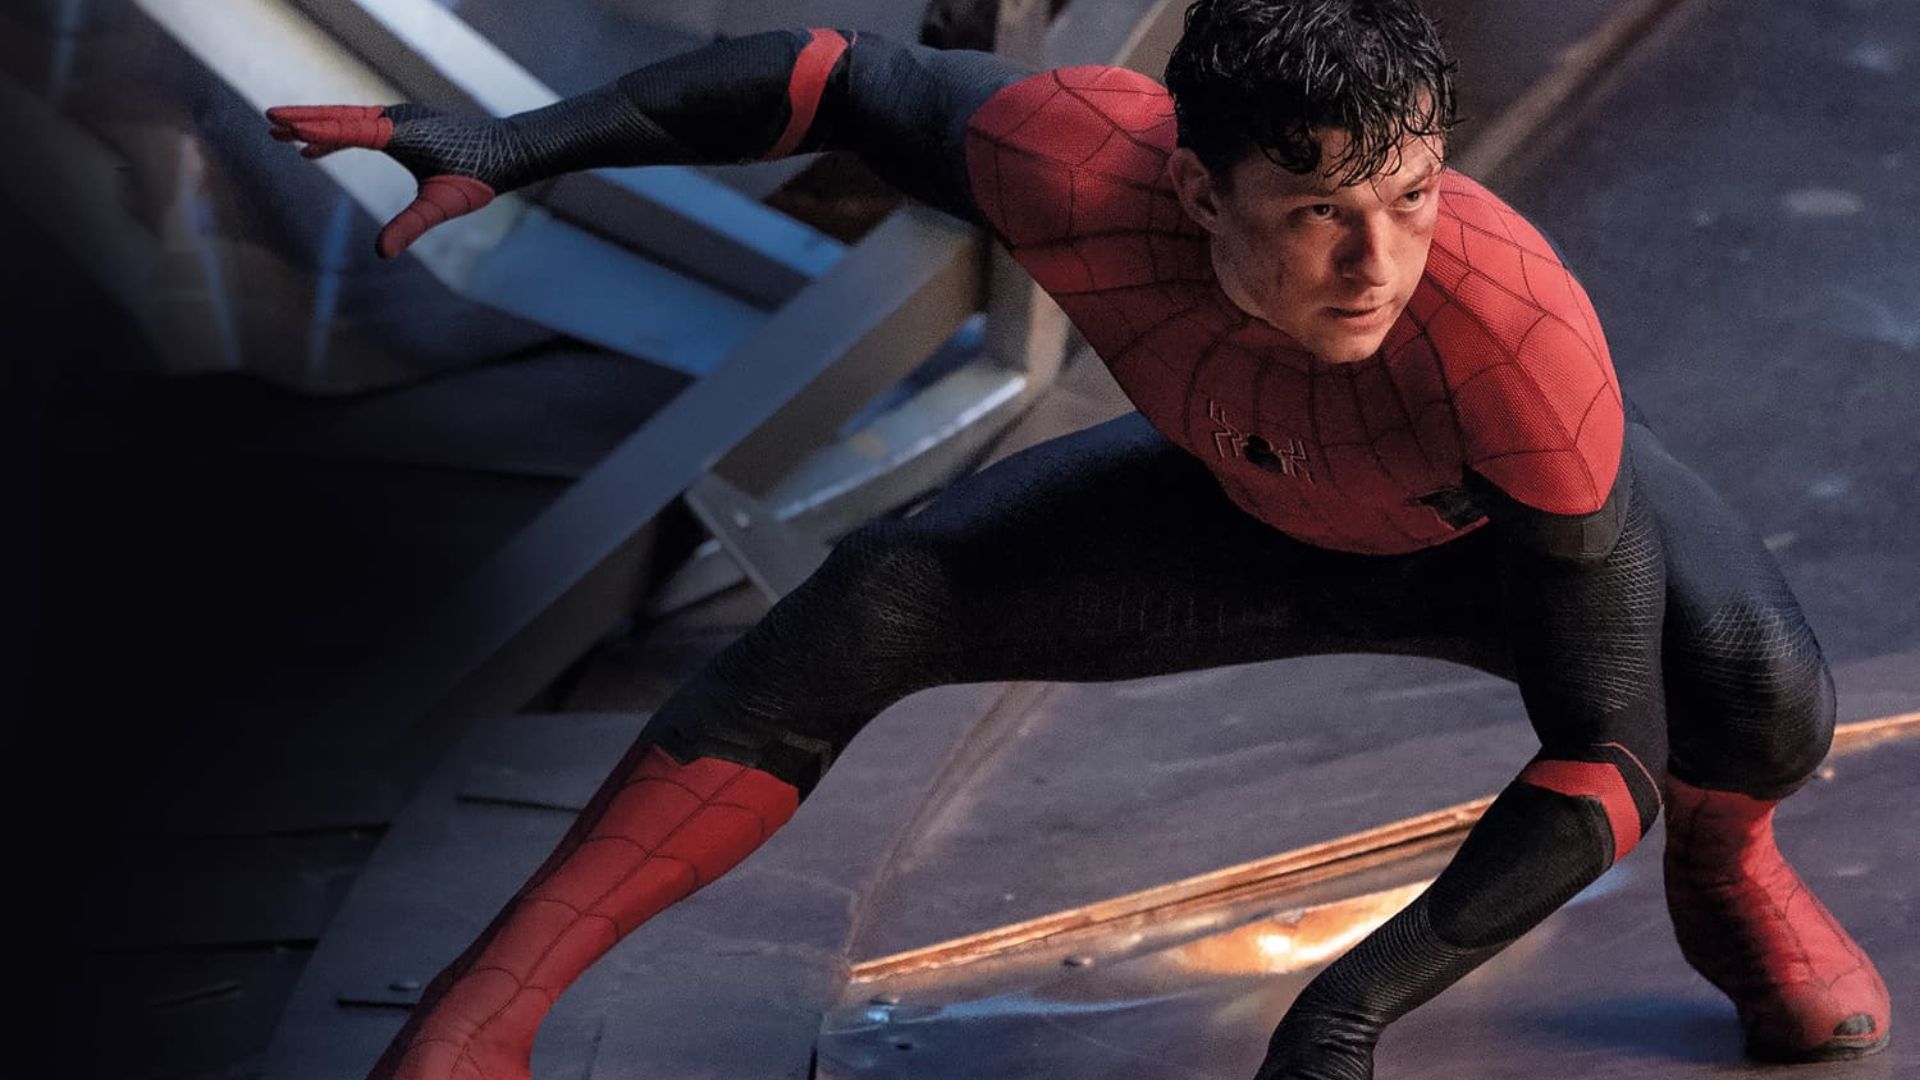 Caso continue no Universo Cinematográfico da Marvel, o Peter Parker de Tom Holland deve fazer parte do novo grupo de heróis da franquia (Foto: Divulgação/Marvel Studios)